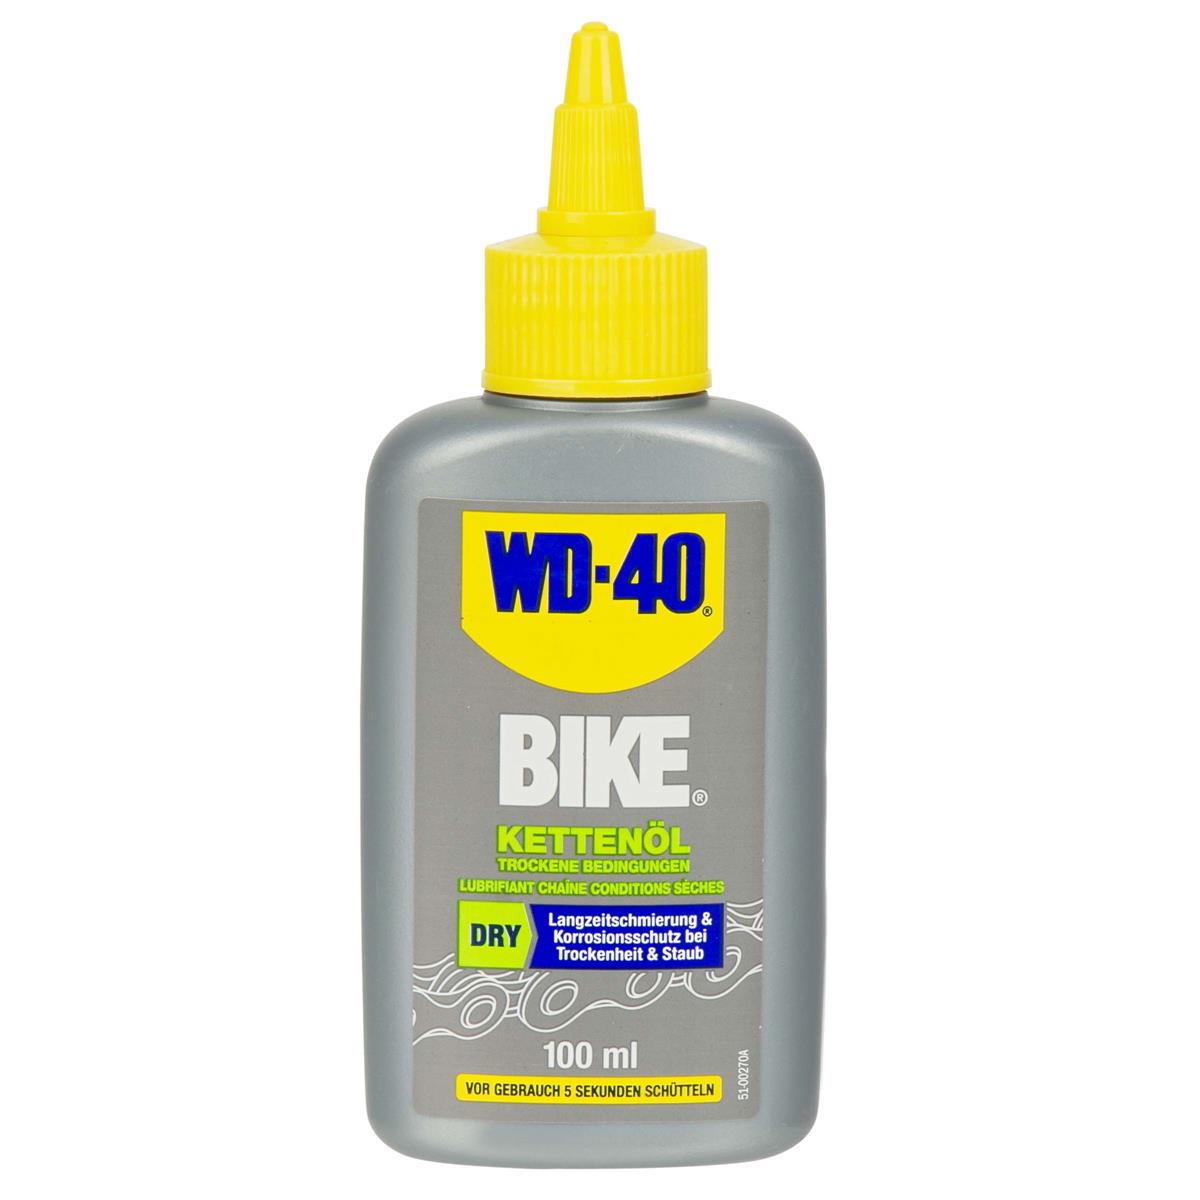 WD-40 Chain Lube Bike Dry, 100 ml